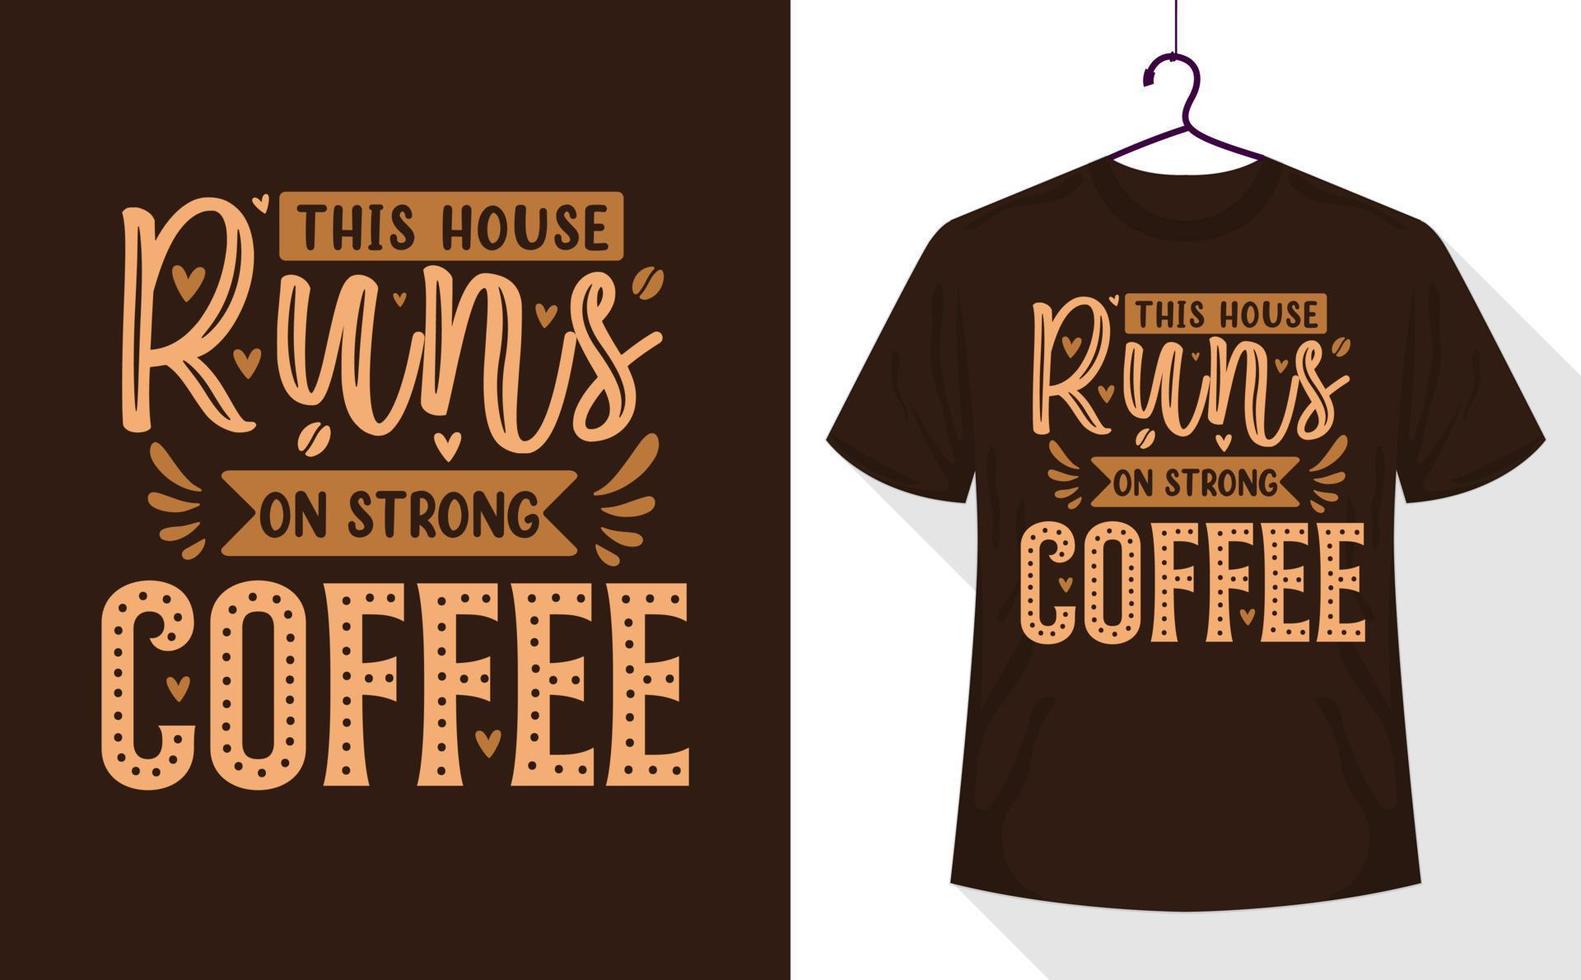 kaffe citat t-shirt, detta hus kör på stark kaffe vektor